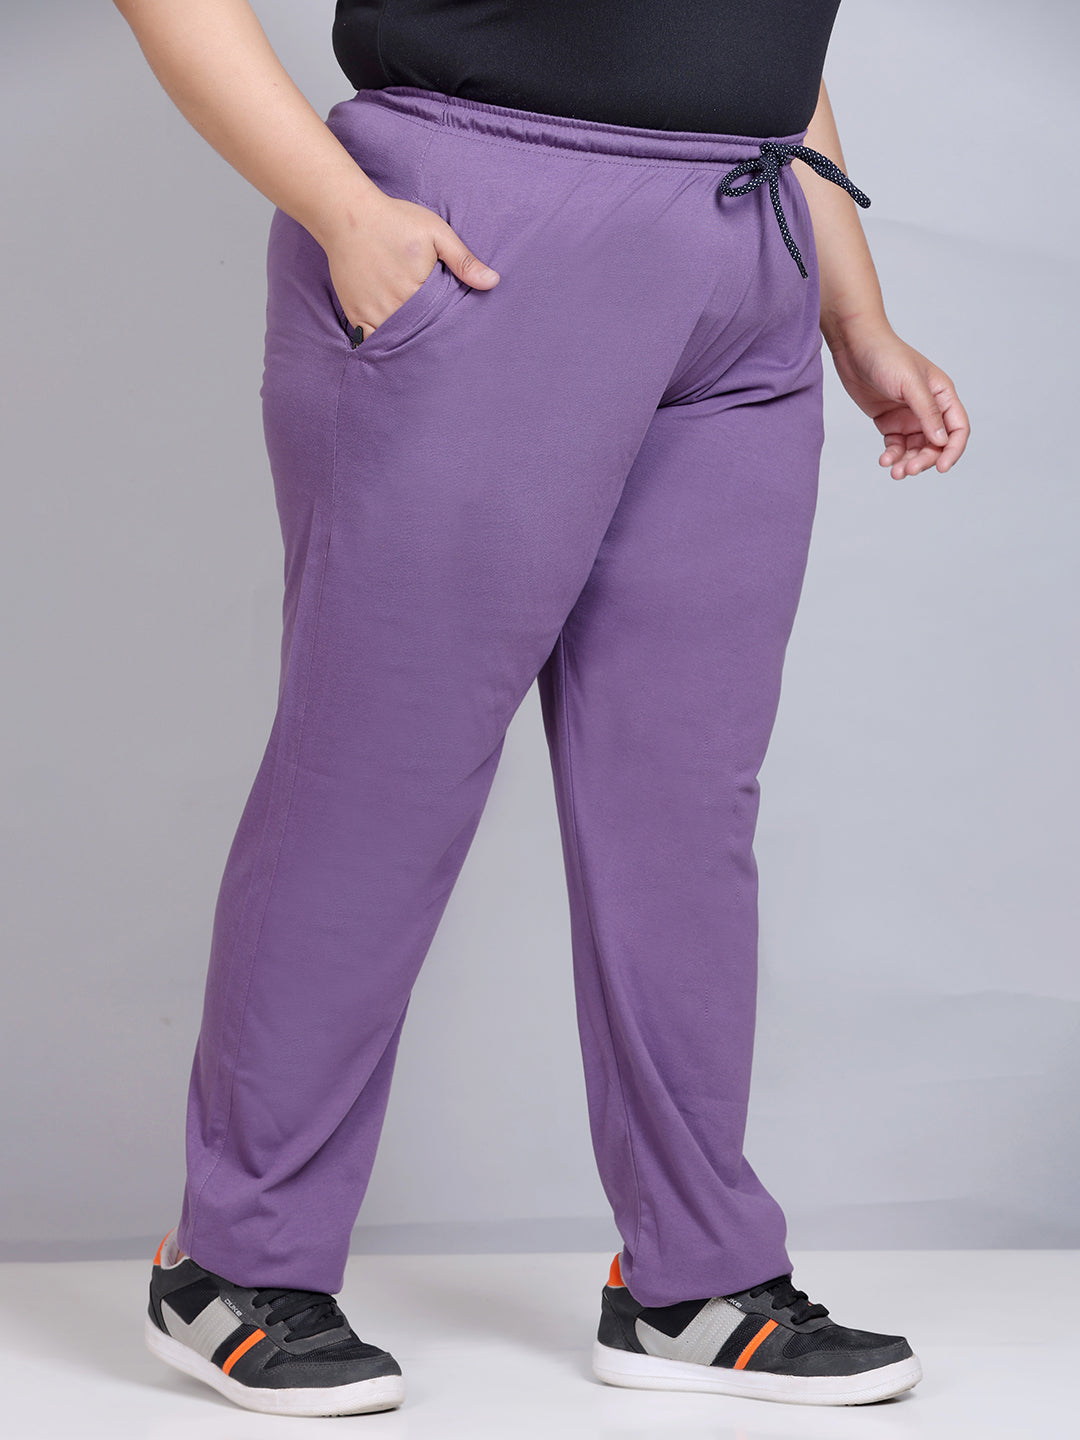 Cotton Track Pants For Women - Lavender